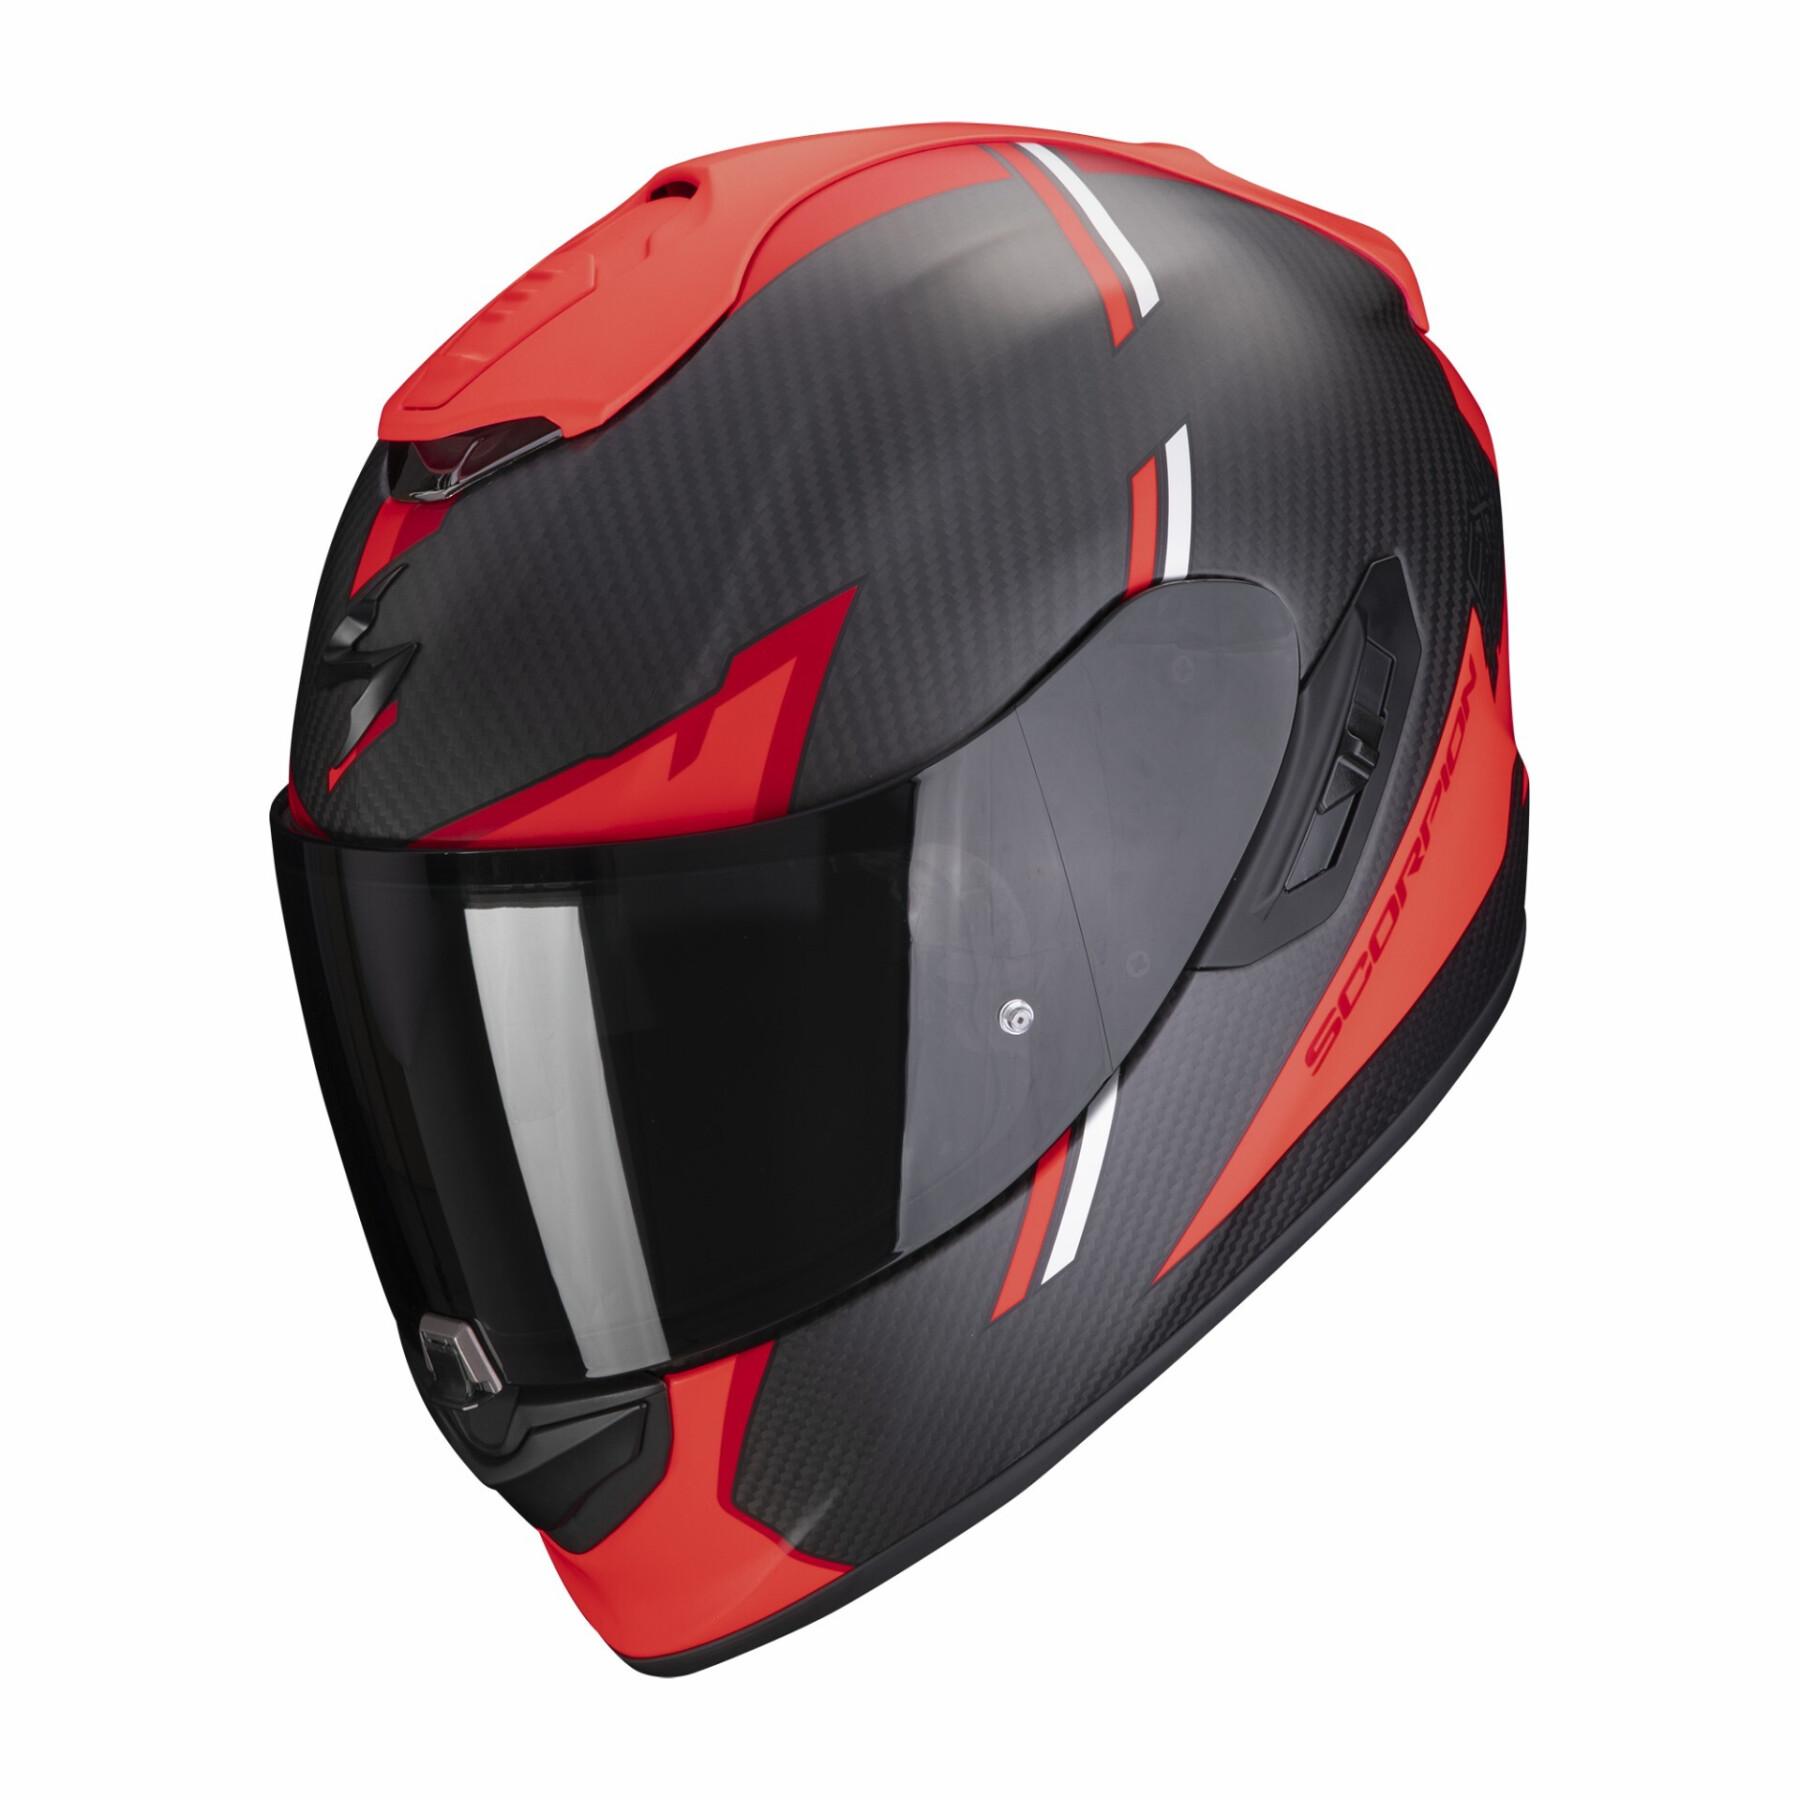 Helhjälm för motorcykel Scorpion Exo-1400 Evo Carbon Air Kendal ECE 22-06